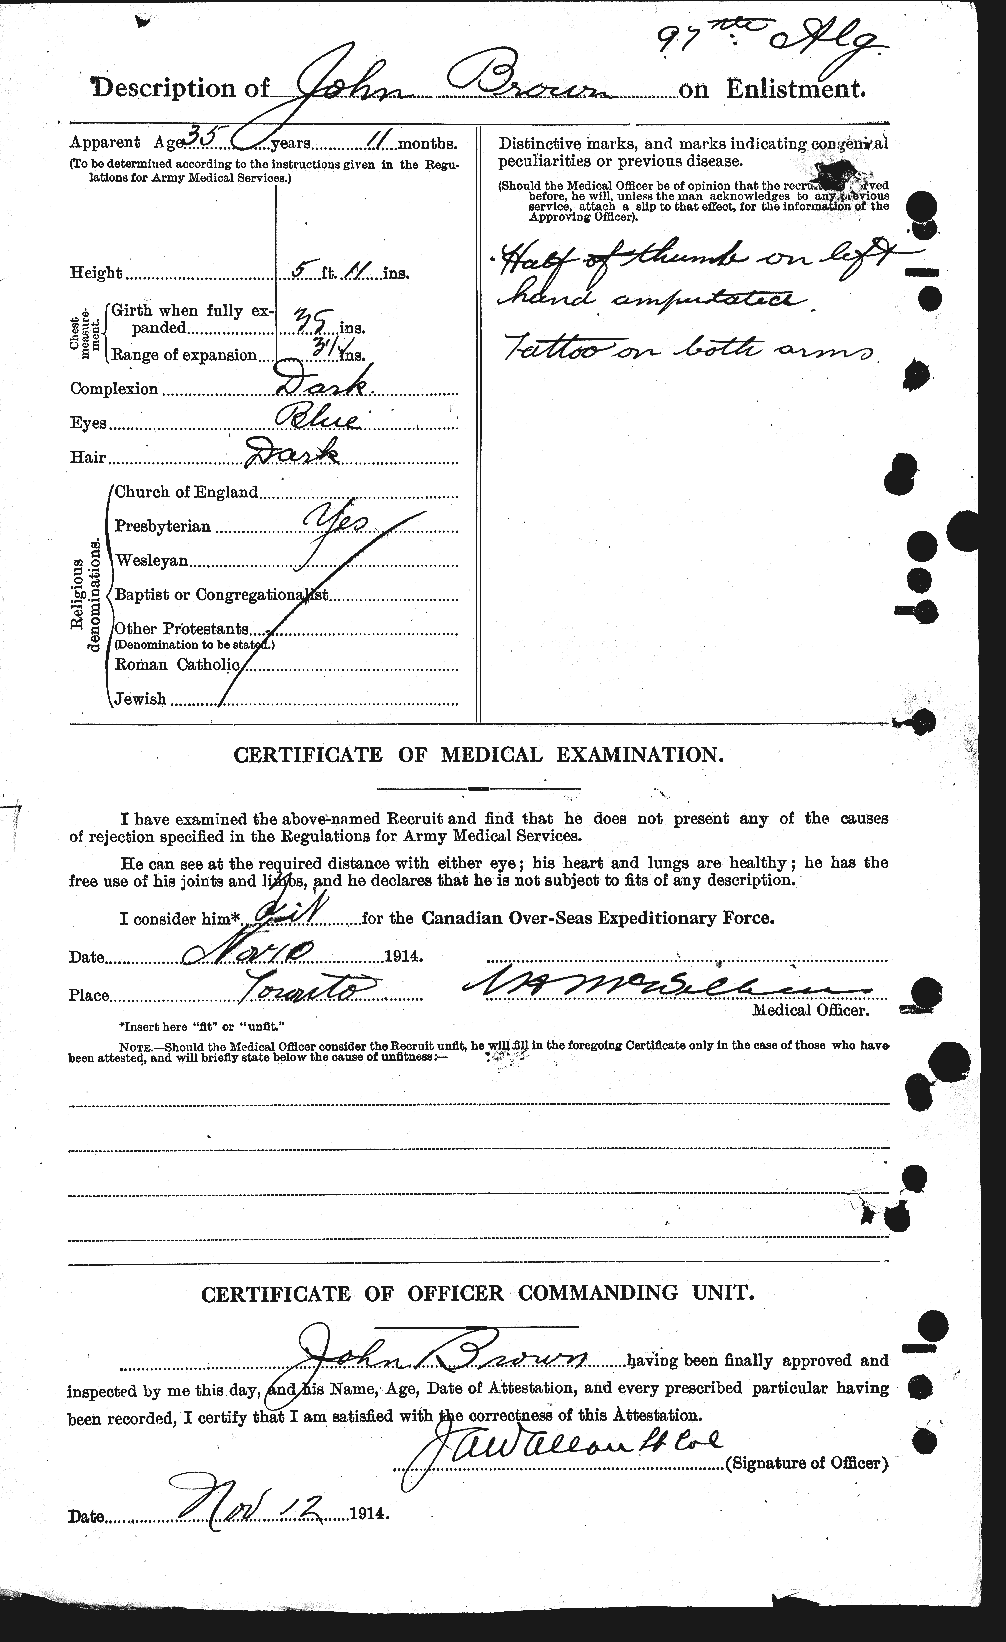 Dossiers du Personnel de la Première Guerre mondiale - CEC 263895b